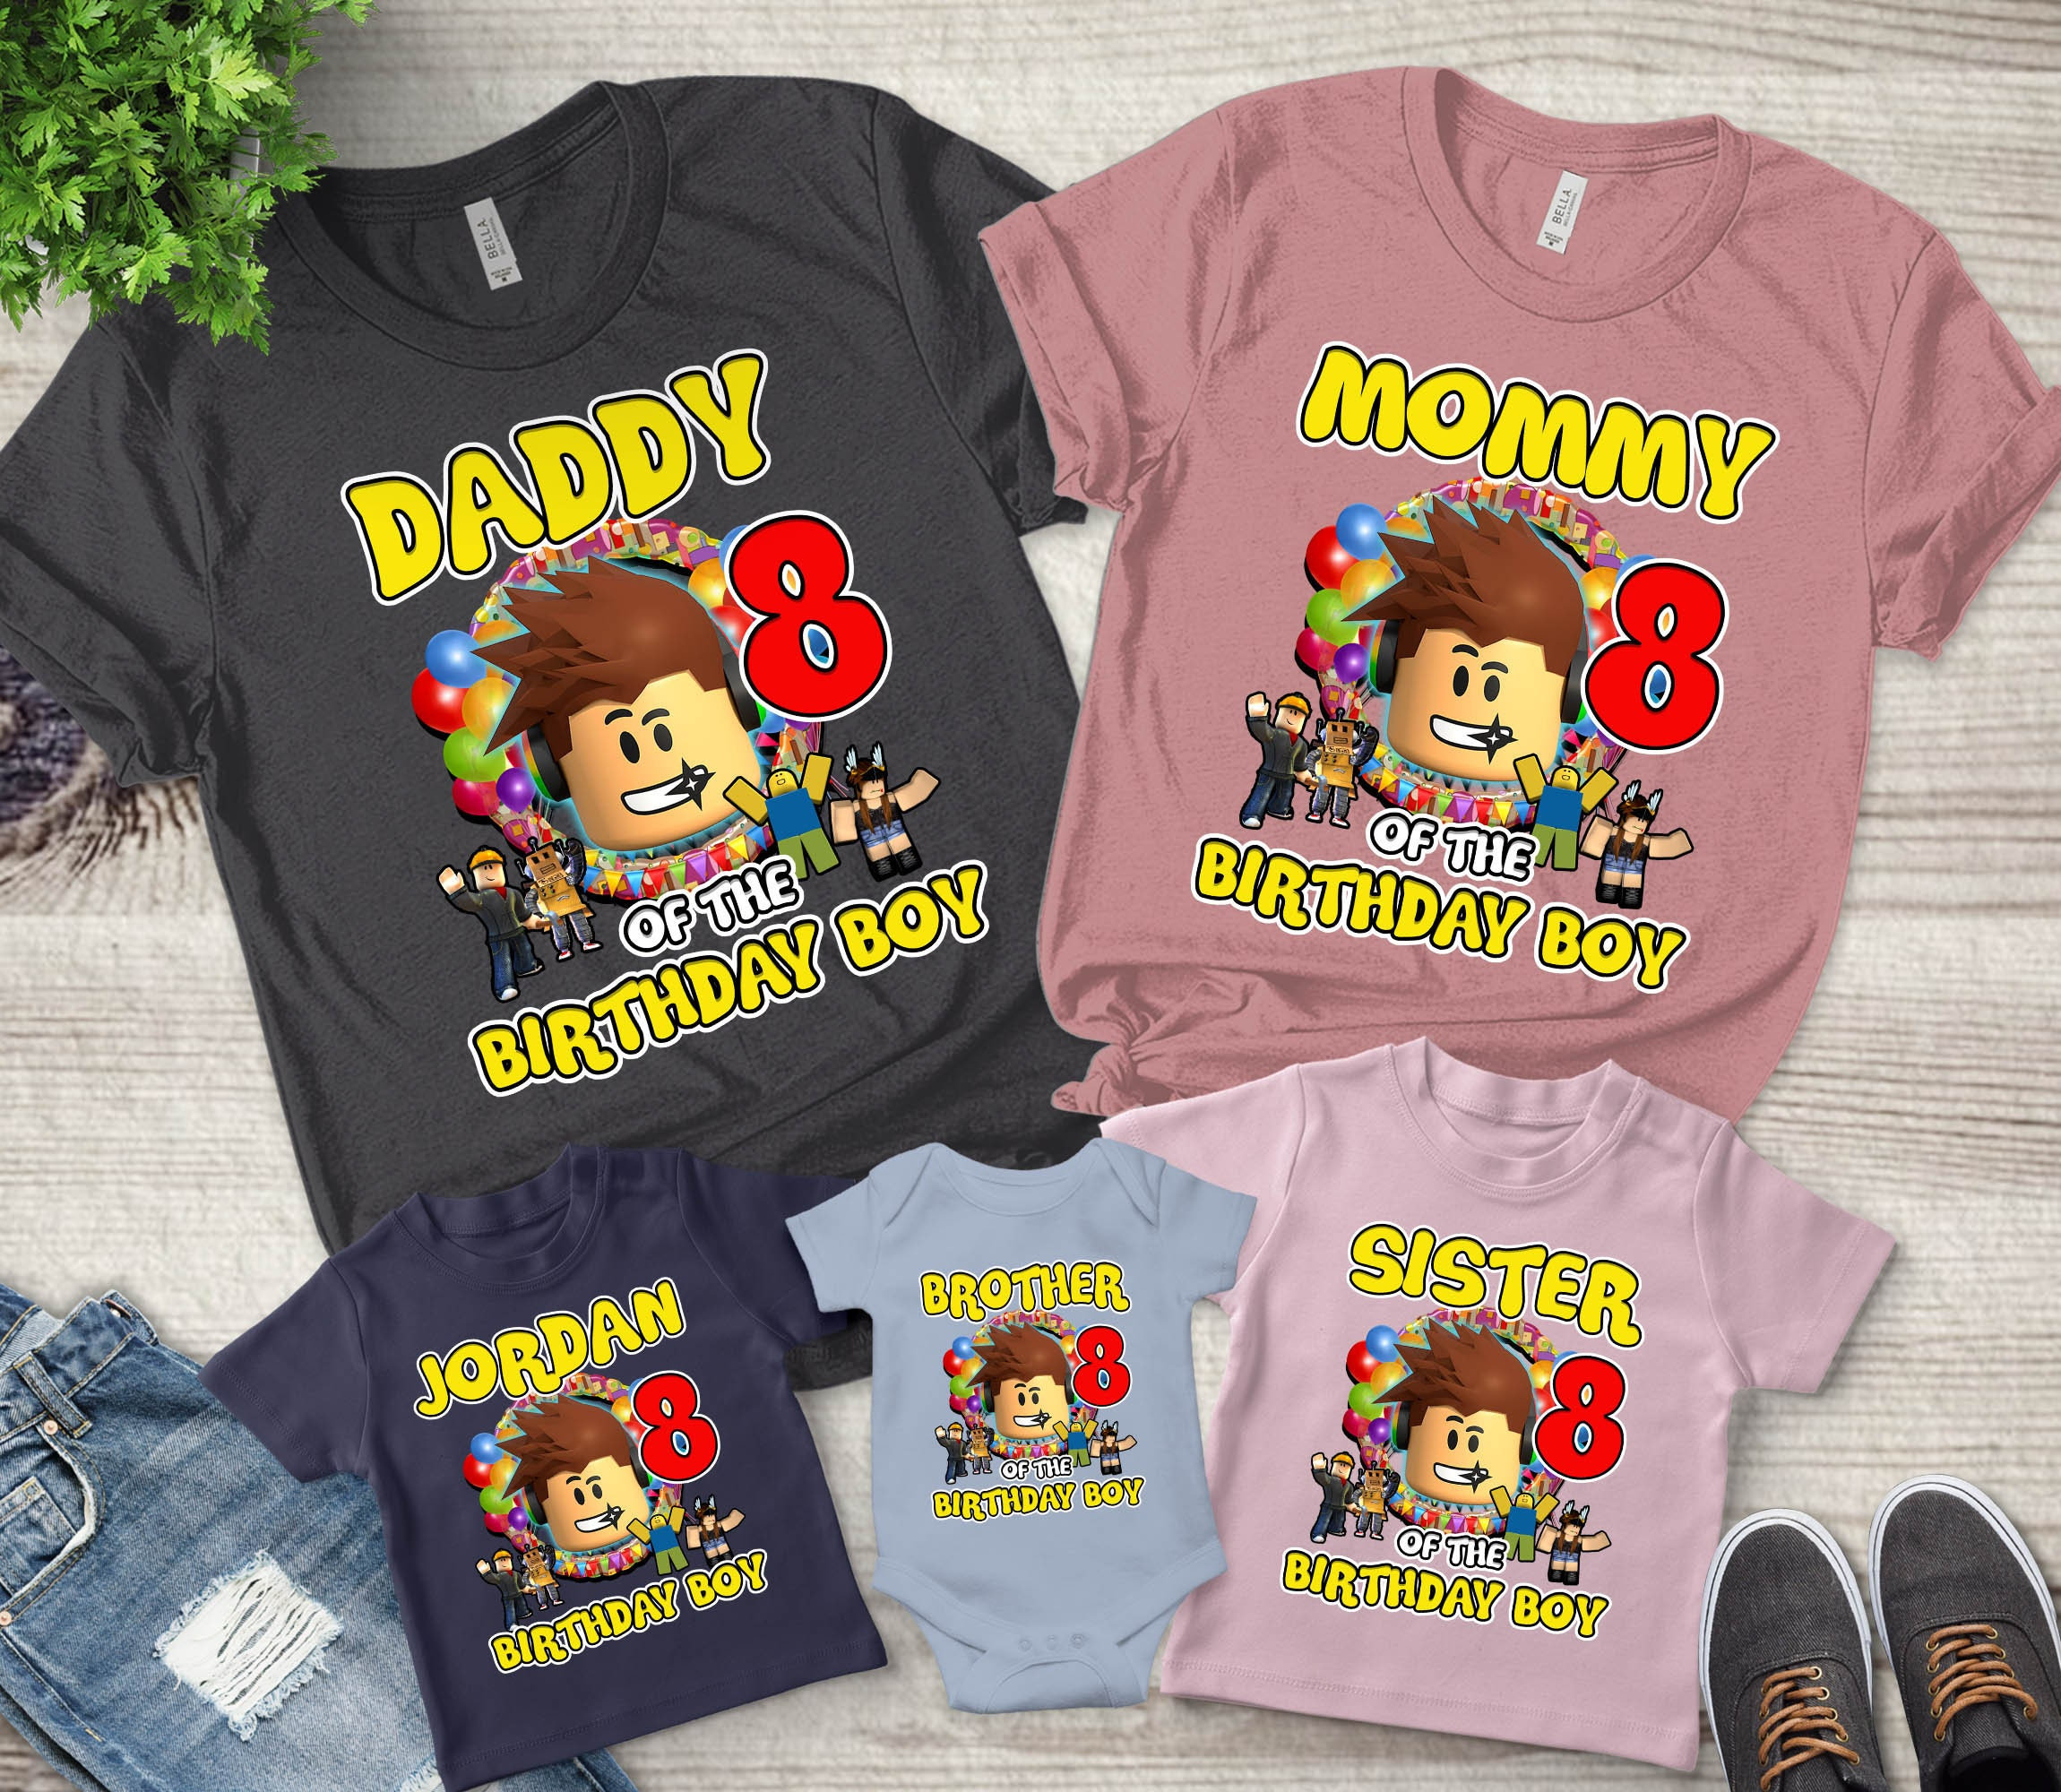 Personalized Roblox Birthday Boy Shirt, Personalized ROBLOX Themed Birthday Shirt Set, Roblox Party Shirts, Family Matching shirts